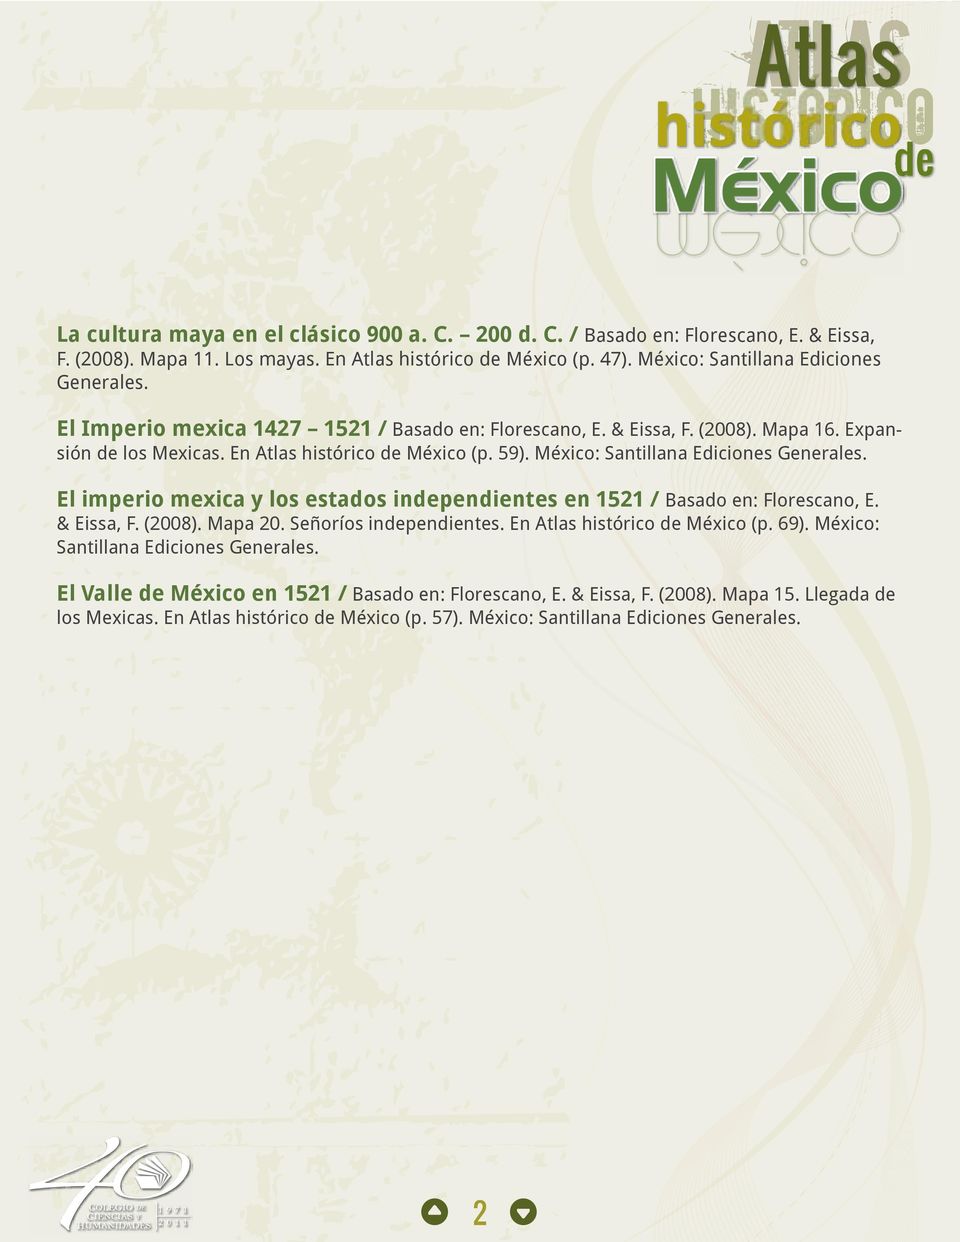 El imperio mexica y los estados independientes en 1521 / Basado en: Florescano, E. & Eissa, F. (2008). Mapa 20. Señoríos independientes. En Atlas histórico de México (p. 69).